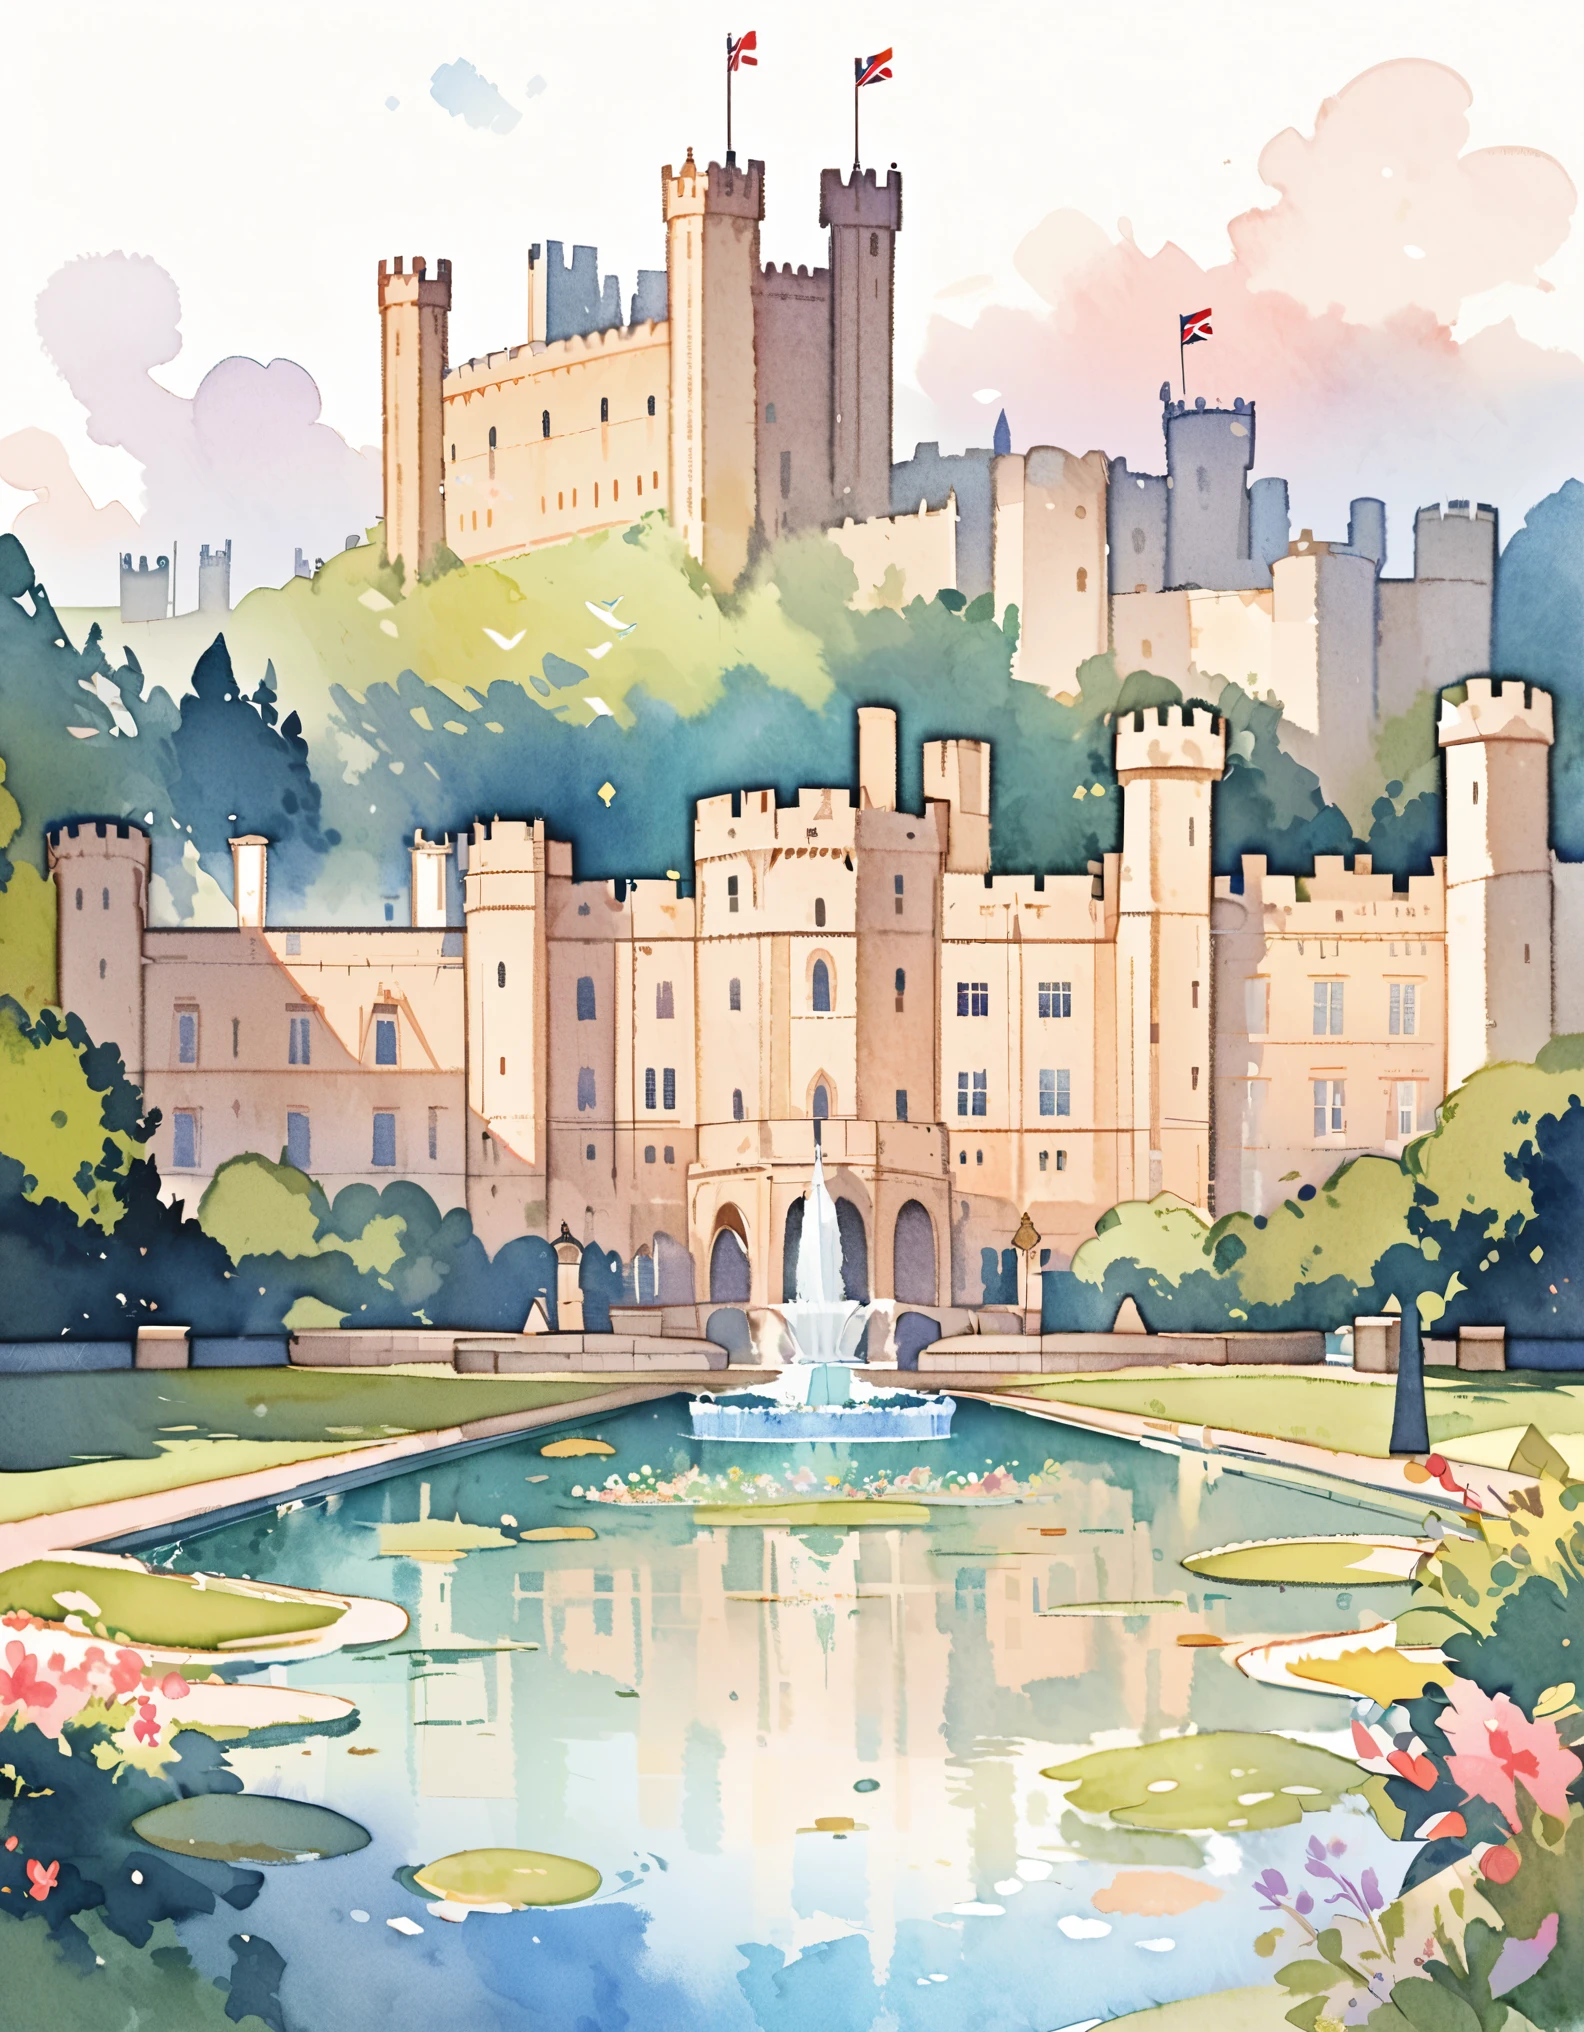 Castelo de Windsor, A residência real oficial do monarca britânico, Palácio Silencioso, Castelos na Inglaterra, aquarela:1.2, caprichoso e delicado, Como uma ilustração em uma criança&#39;livro, escovação suave, Dim, As cores claras criam uma aparência fantástica.